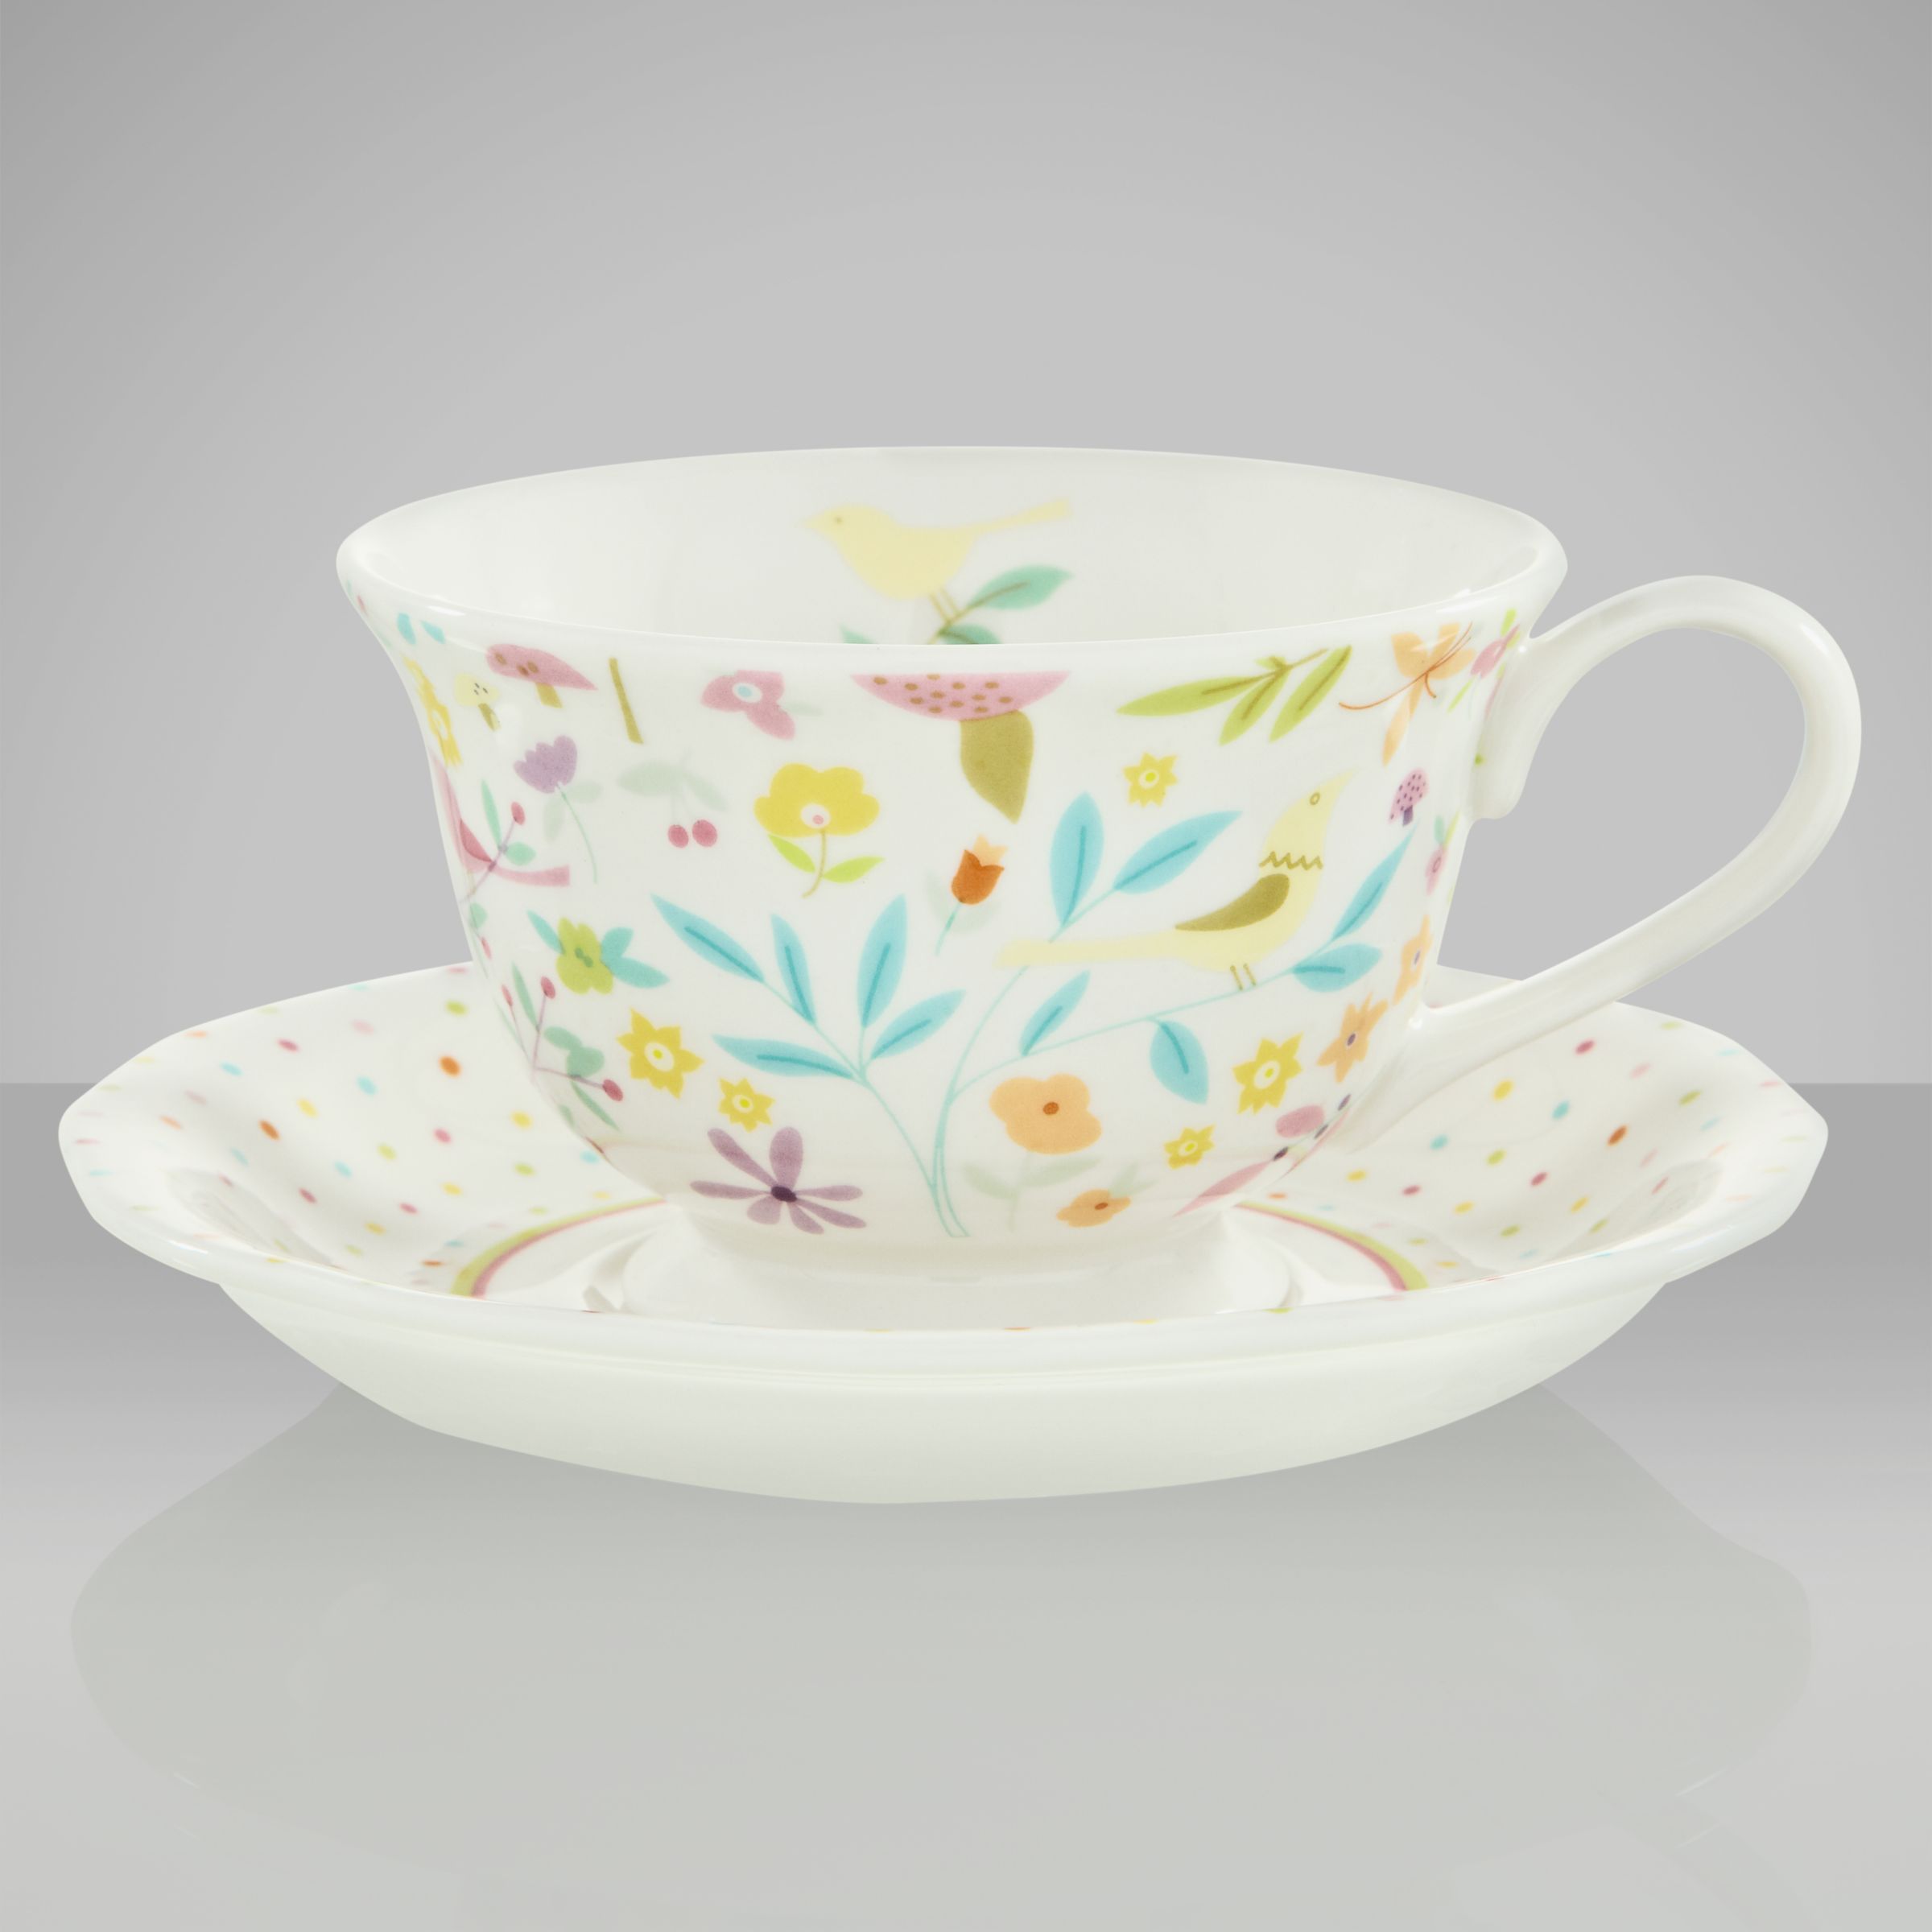 Secret Garden Porcelain Teacup and